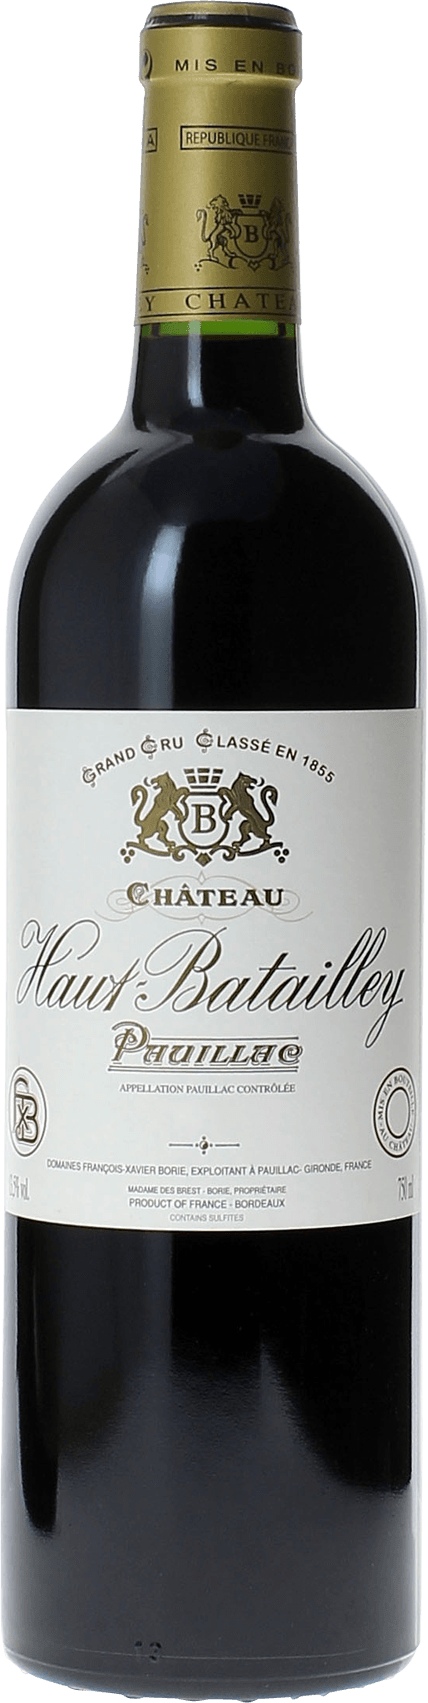 Haut batailley 1990 5 me Grand cru class Pauillac, Bordeaux rouge